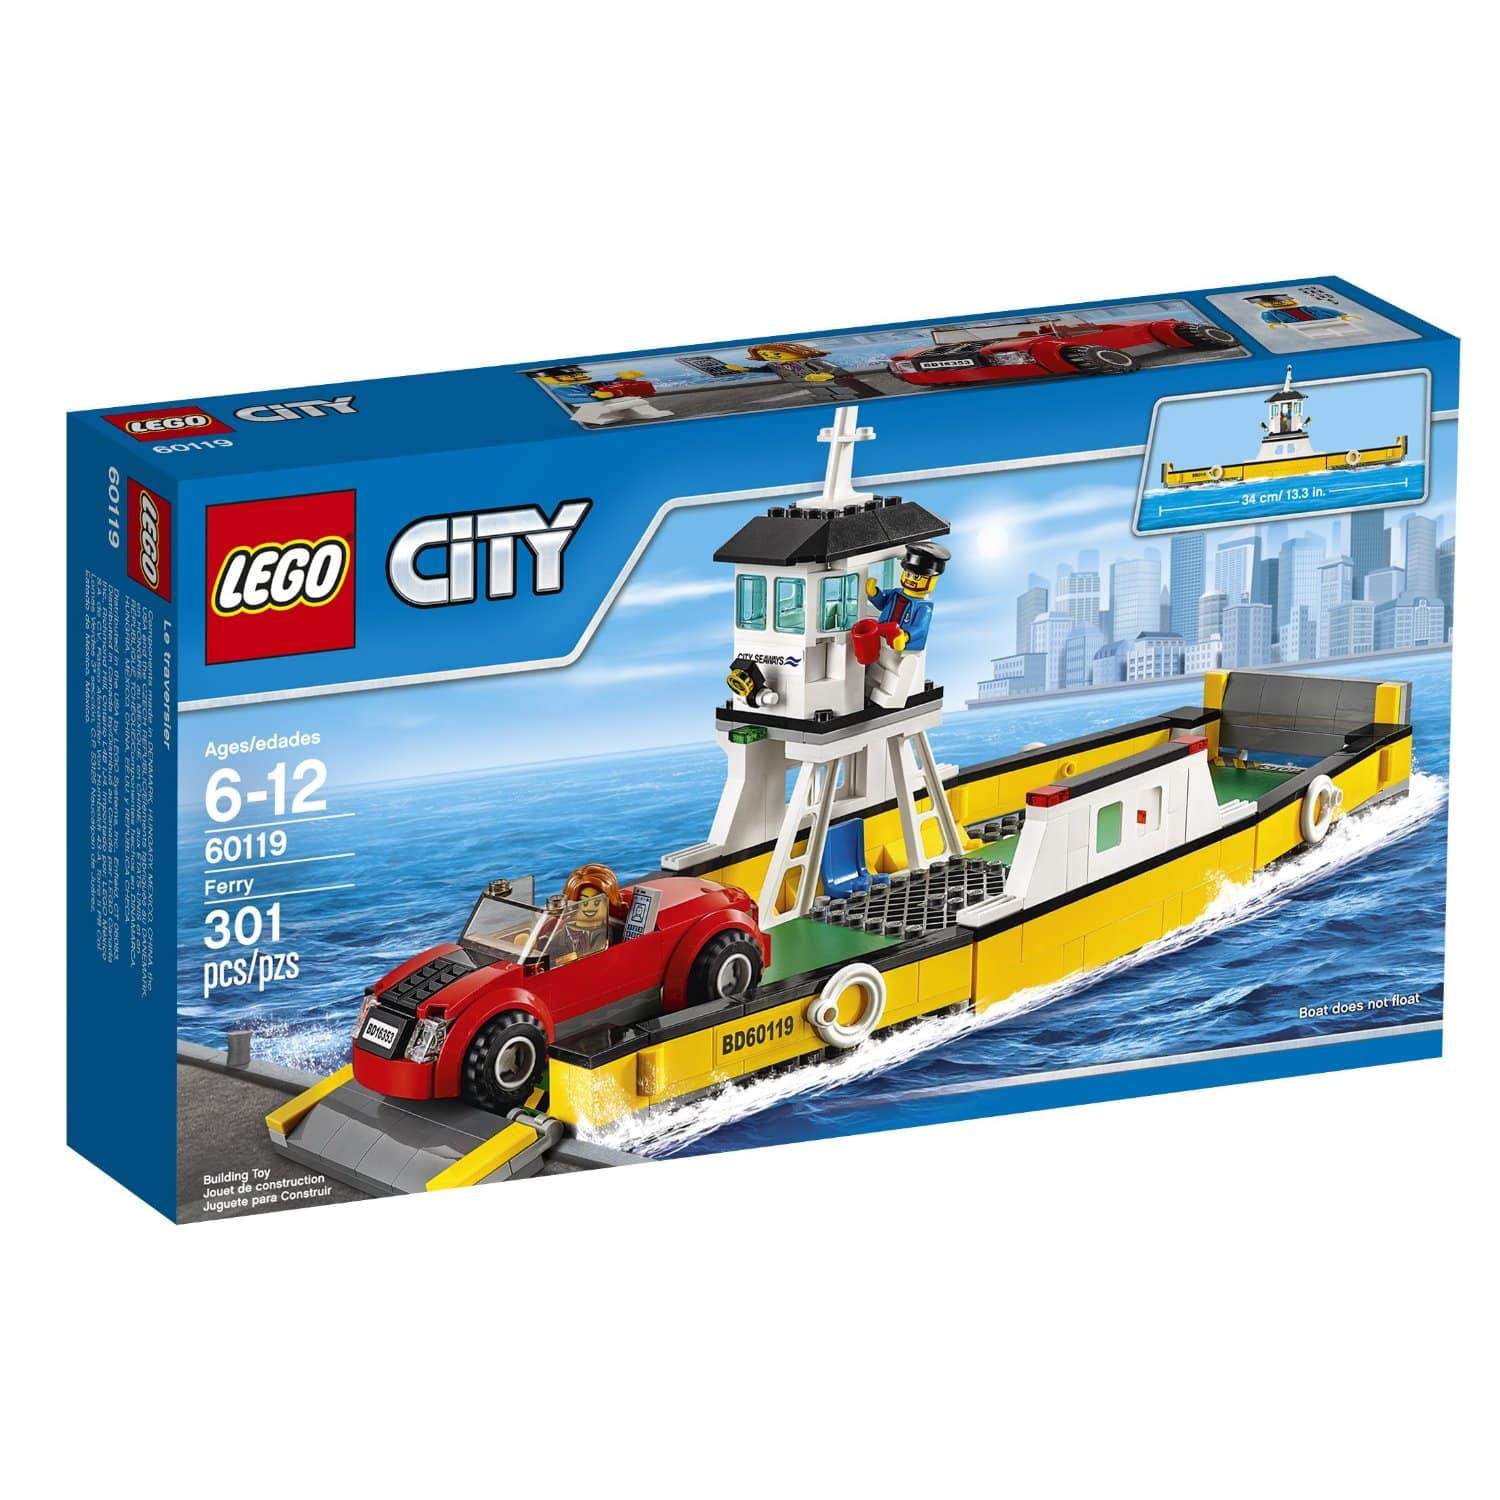 DEAL ALERT: LEGO CITY Ferry – 33% off!